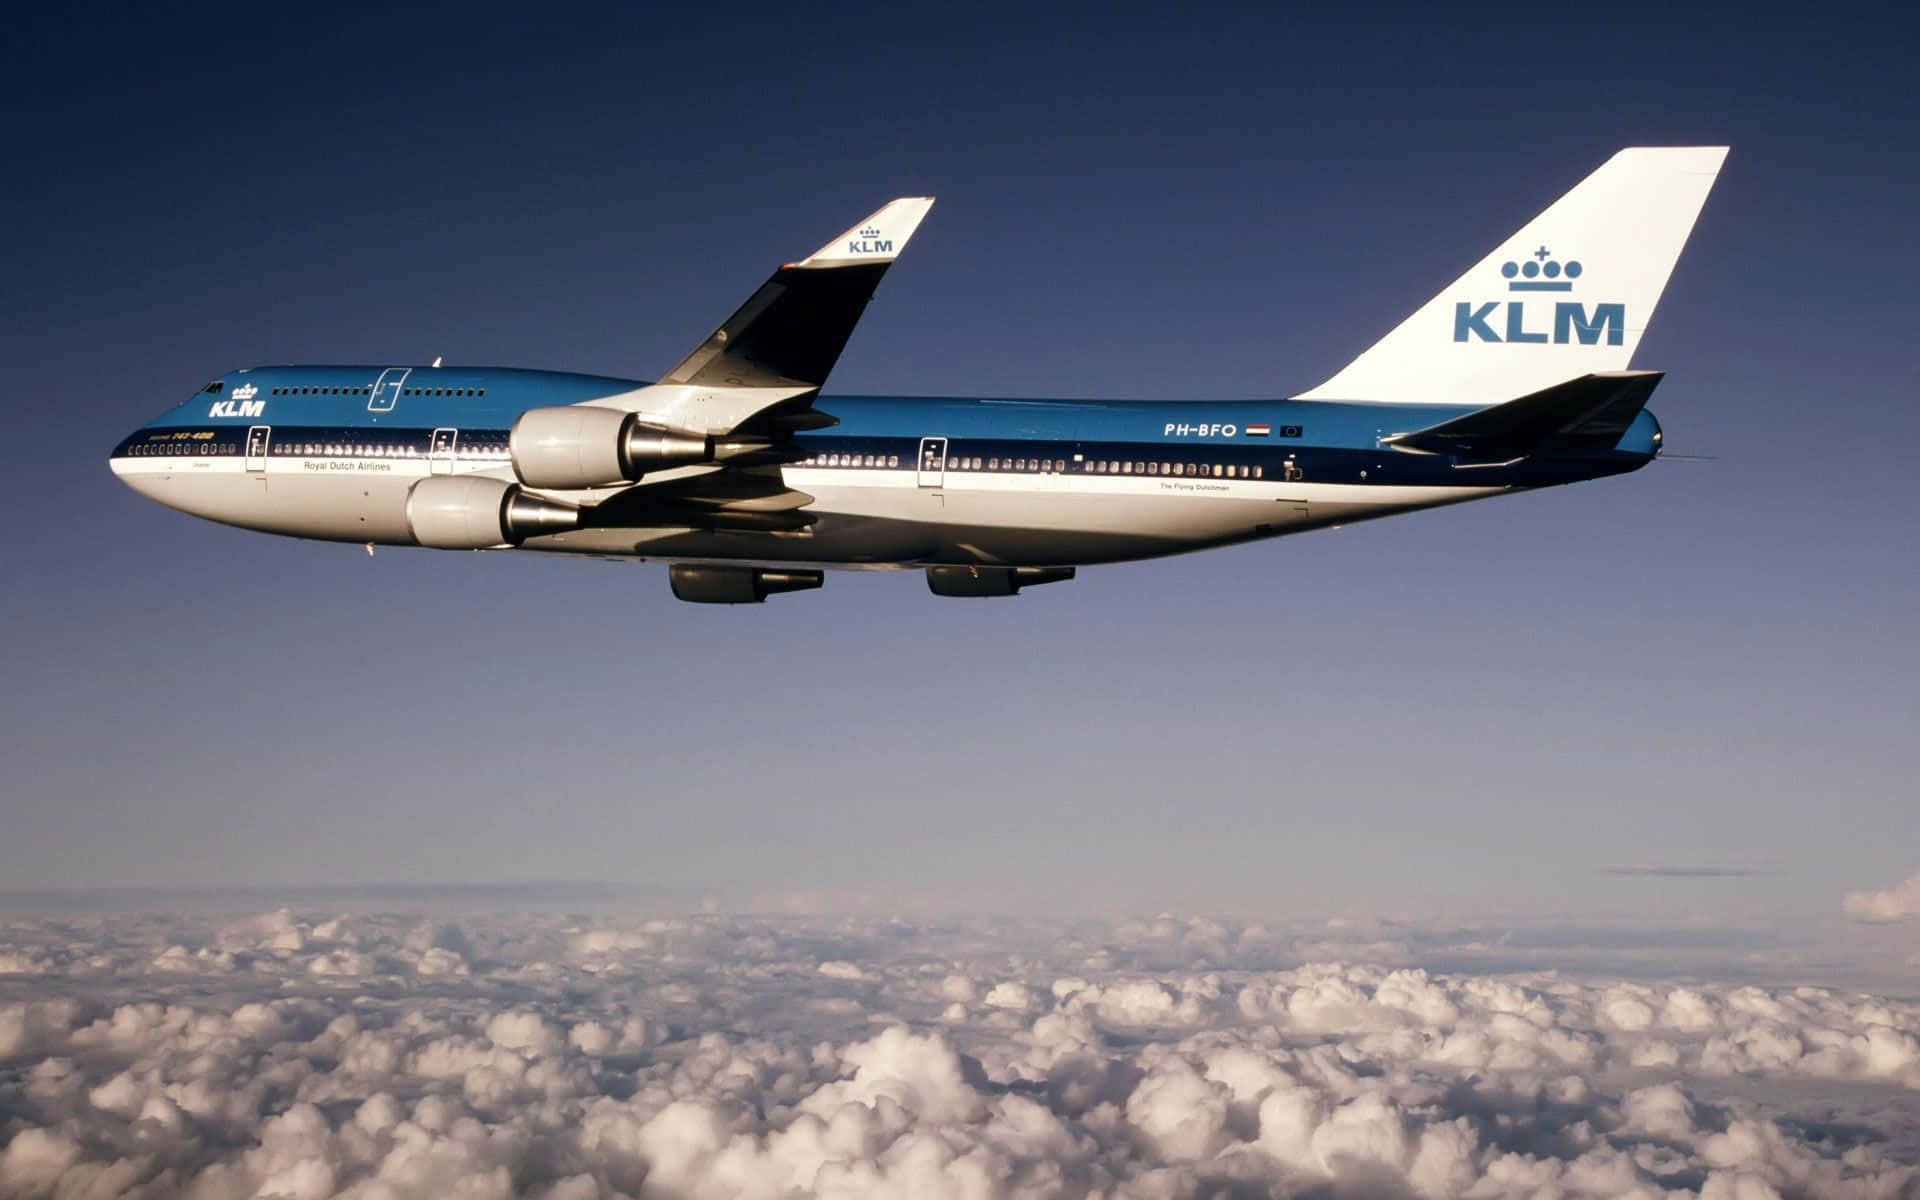 Billede et Boeing 747 stiger ind i himlen Wallpaper